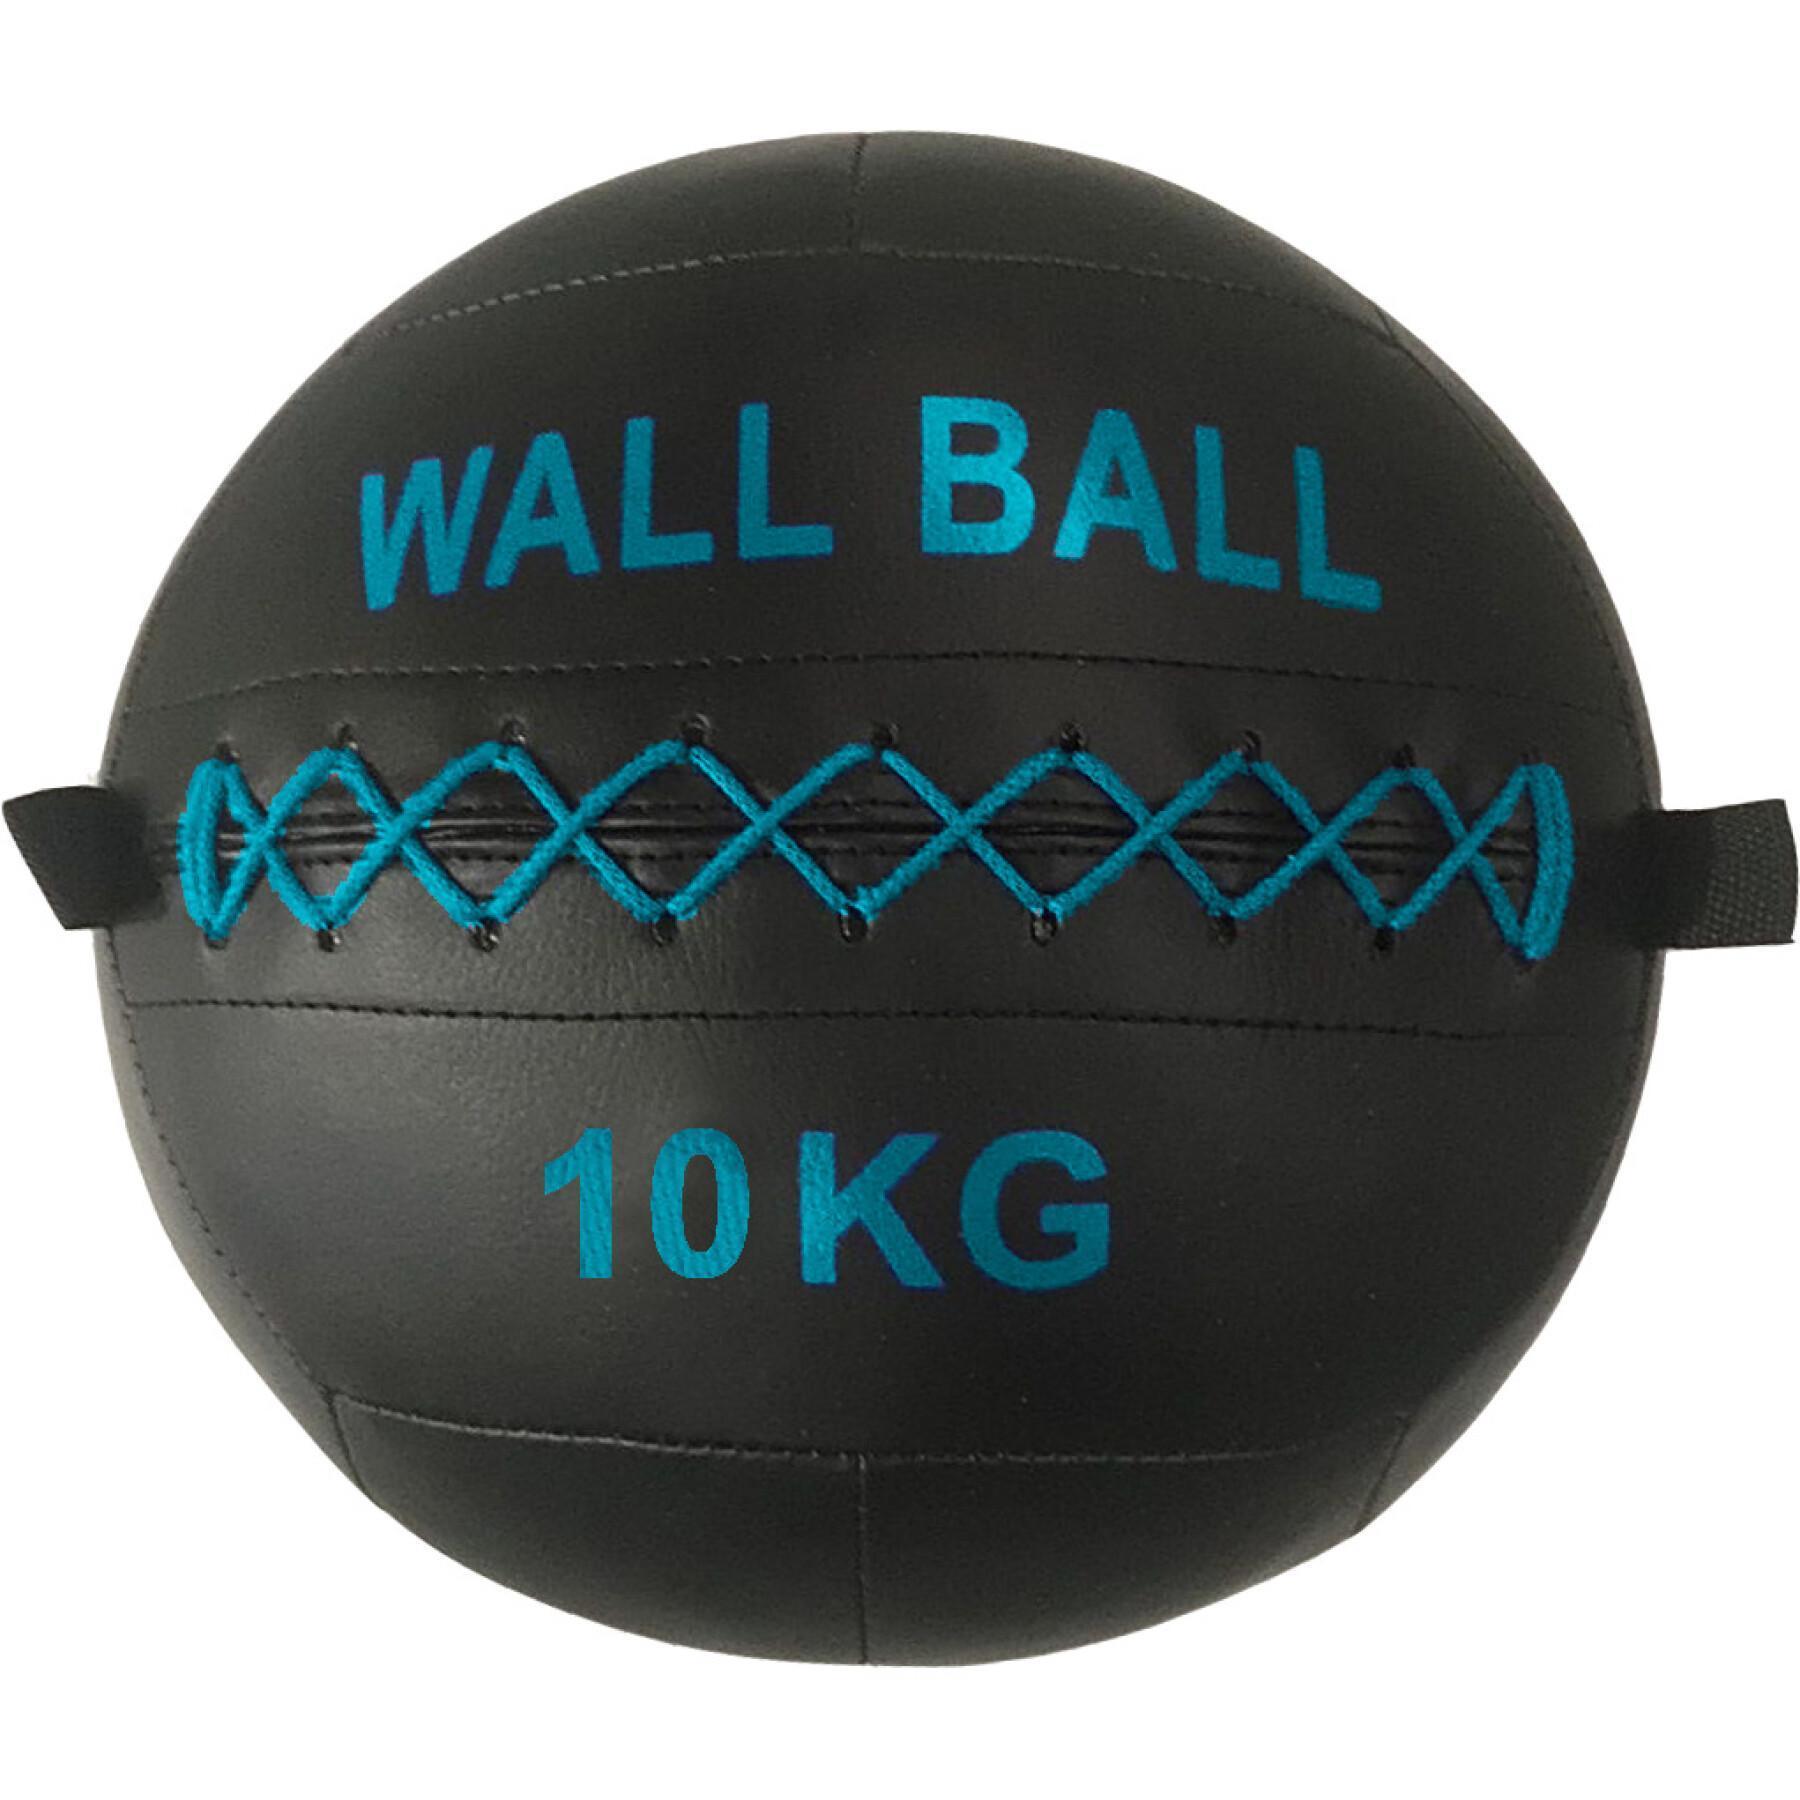 Mauerball Sporti 10kg